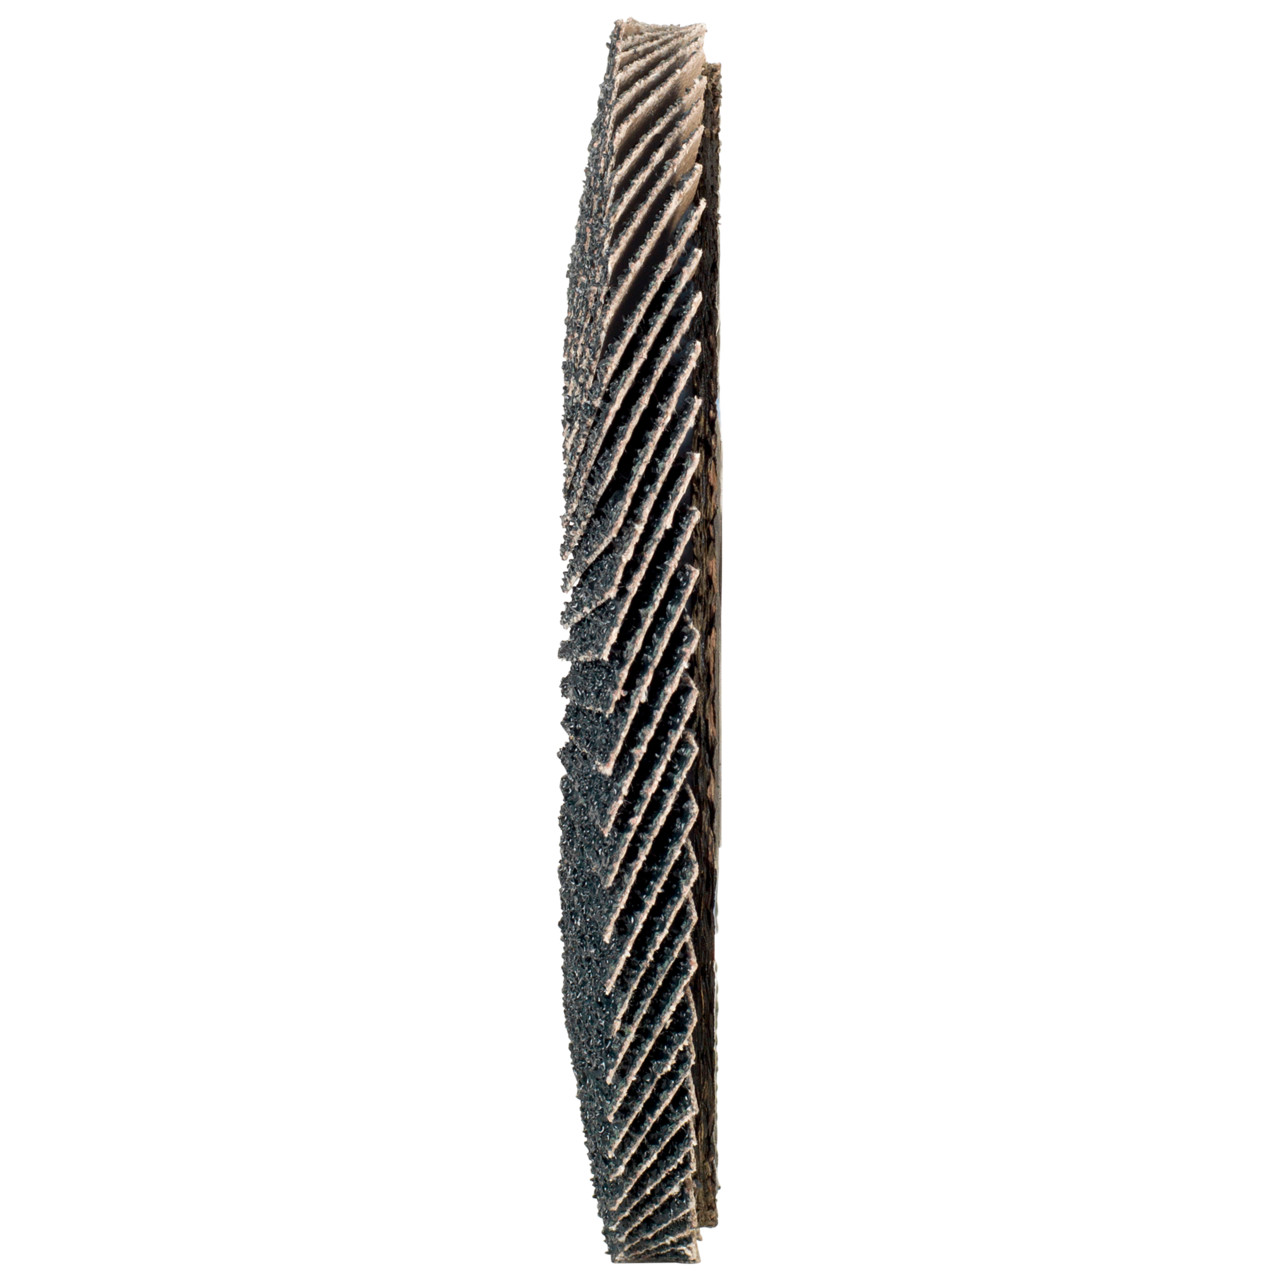 Tyrolit Arandela dentada DxH 125x22,2 2en1 para acero y acero inoxidable, P40, forma: 27A - versión desplazada (versión con cuerpo de soporte de fibra de vidrio), Art. 668663